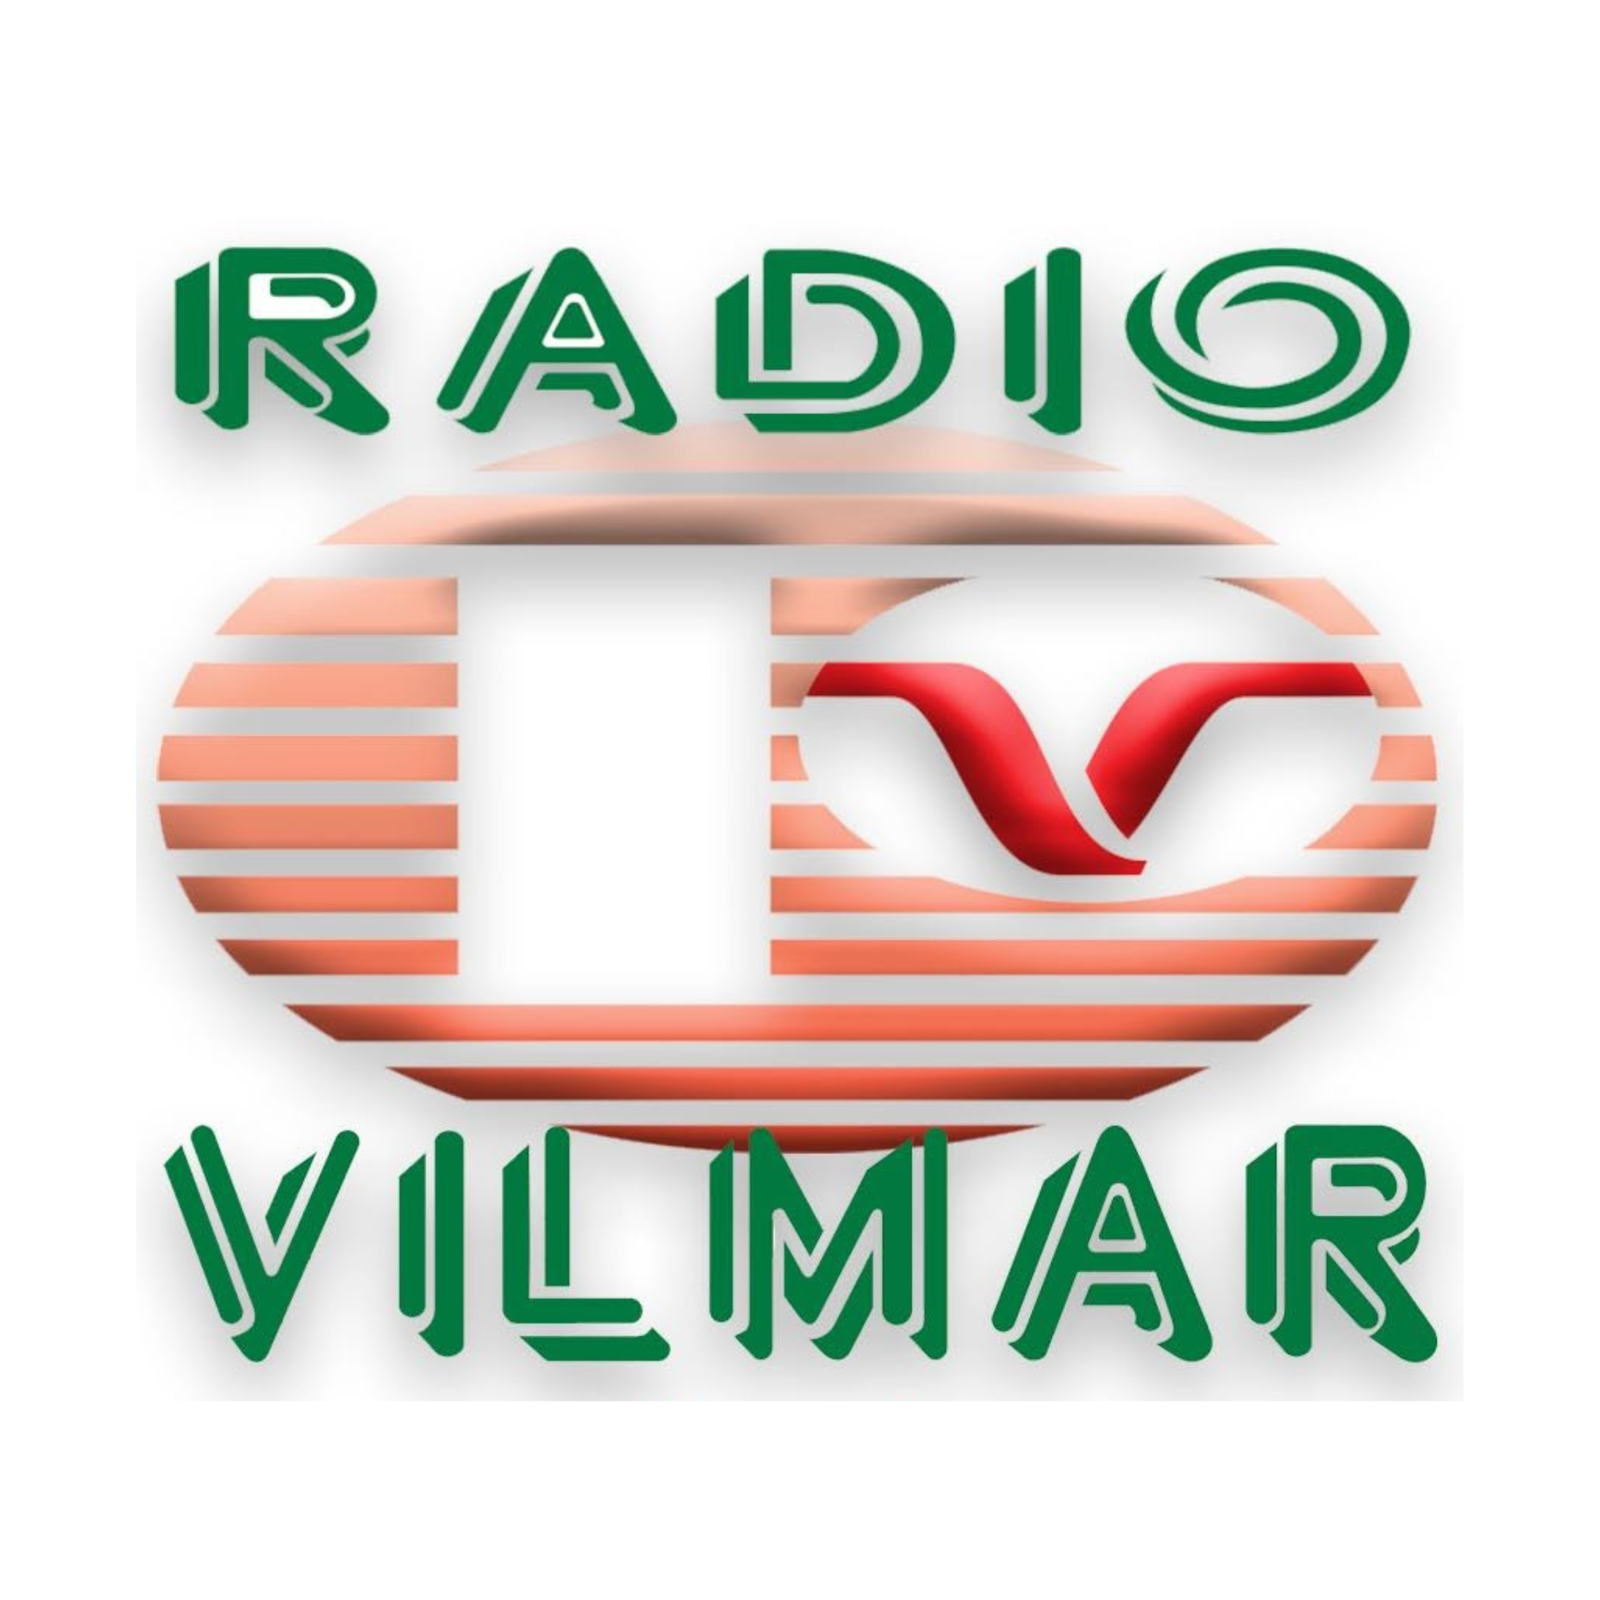 VILMAR FM